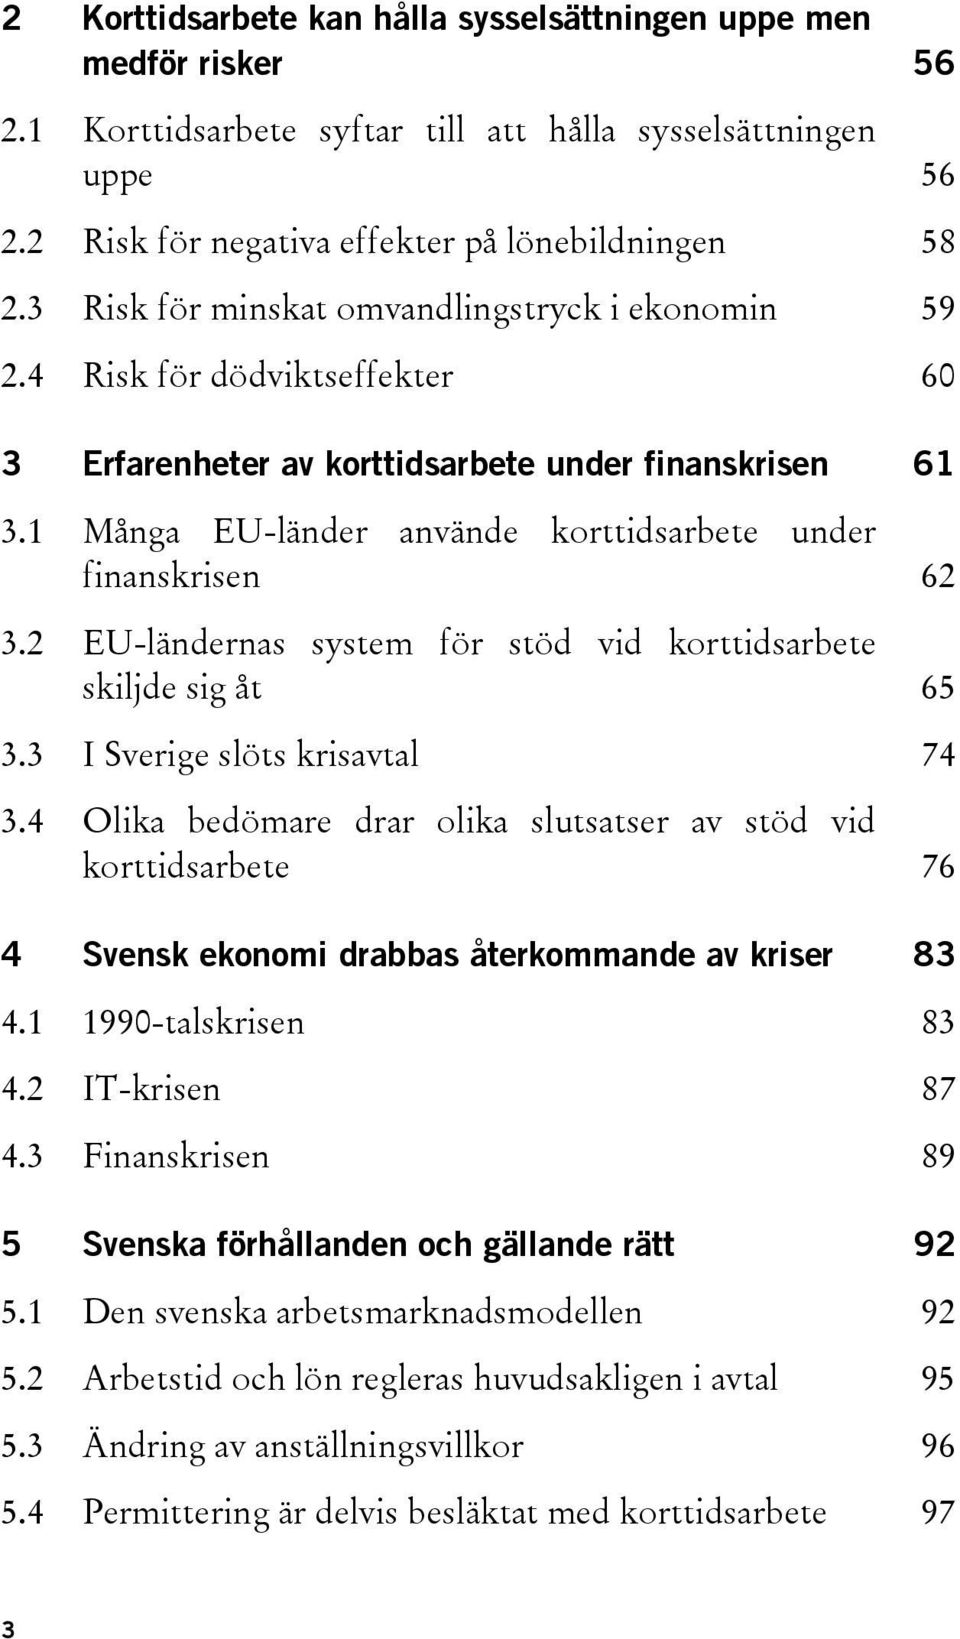 1 Många EU-länder använde korttidsarbete under finanskrisen 62 3.2 EU-ländernas system för stöd vid korttidsarbete skiljde sig åt 65 3.3 I Sverige slöts krisavtal 74 3.